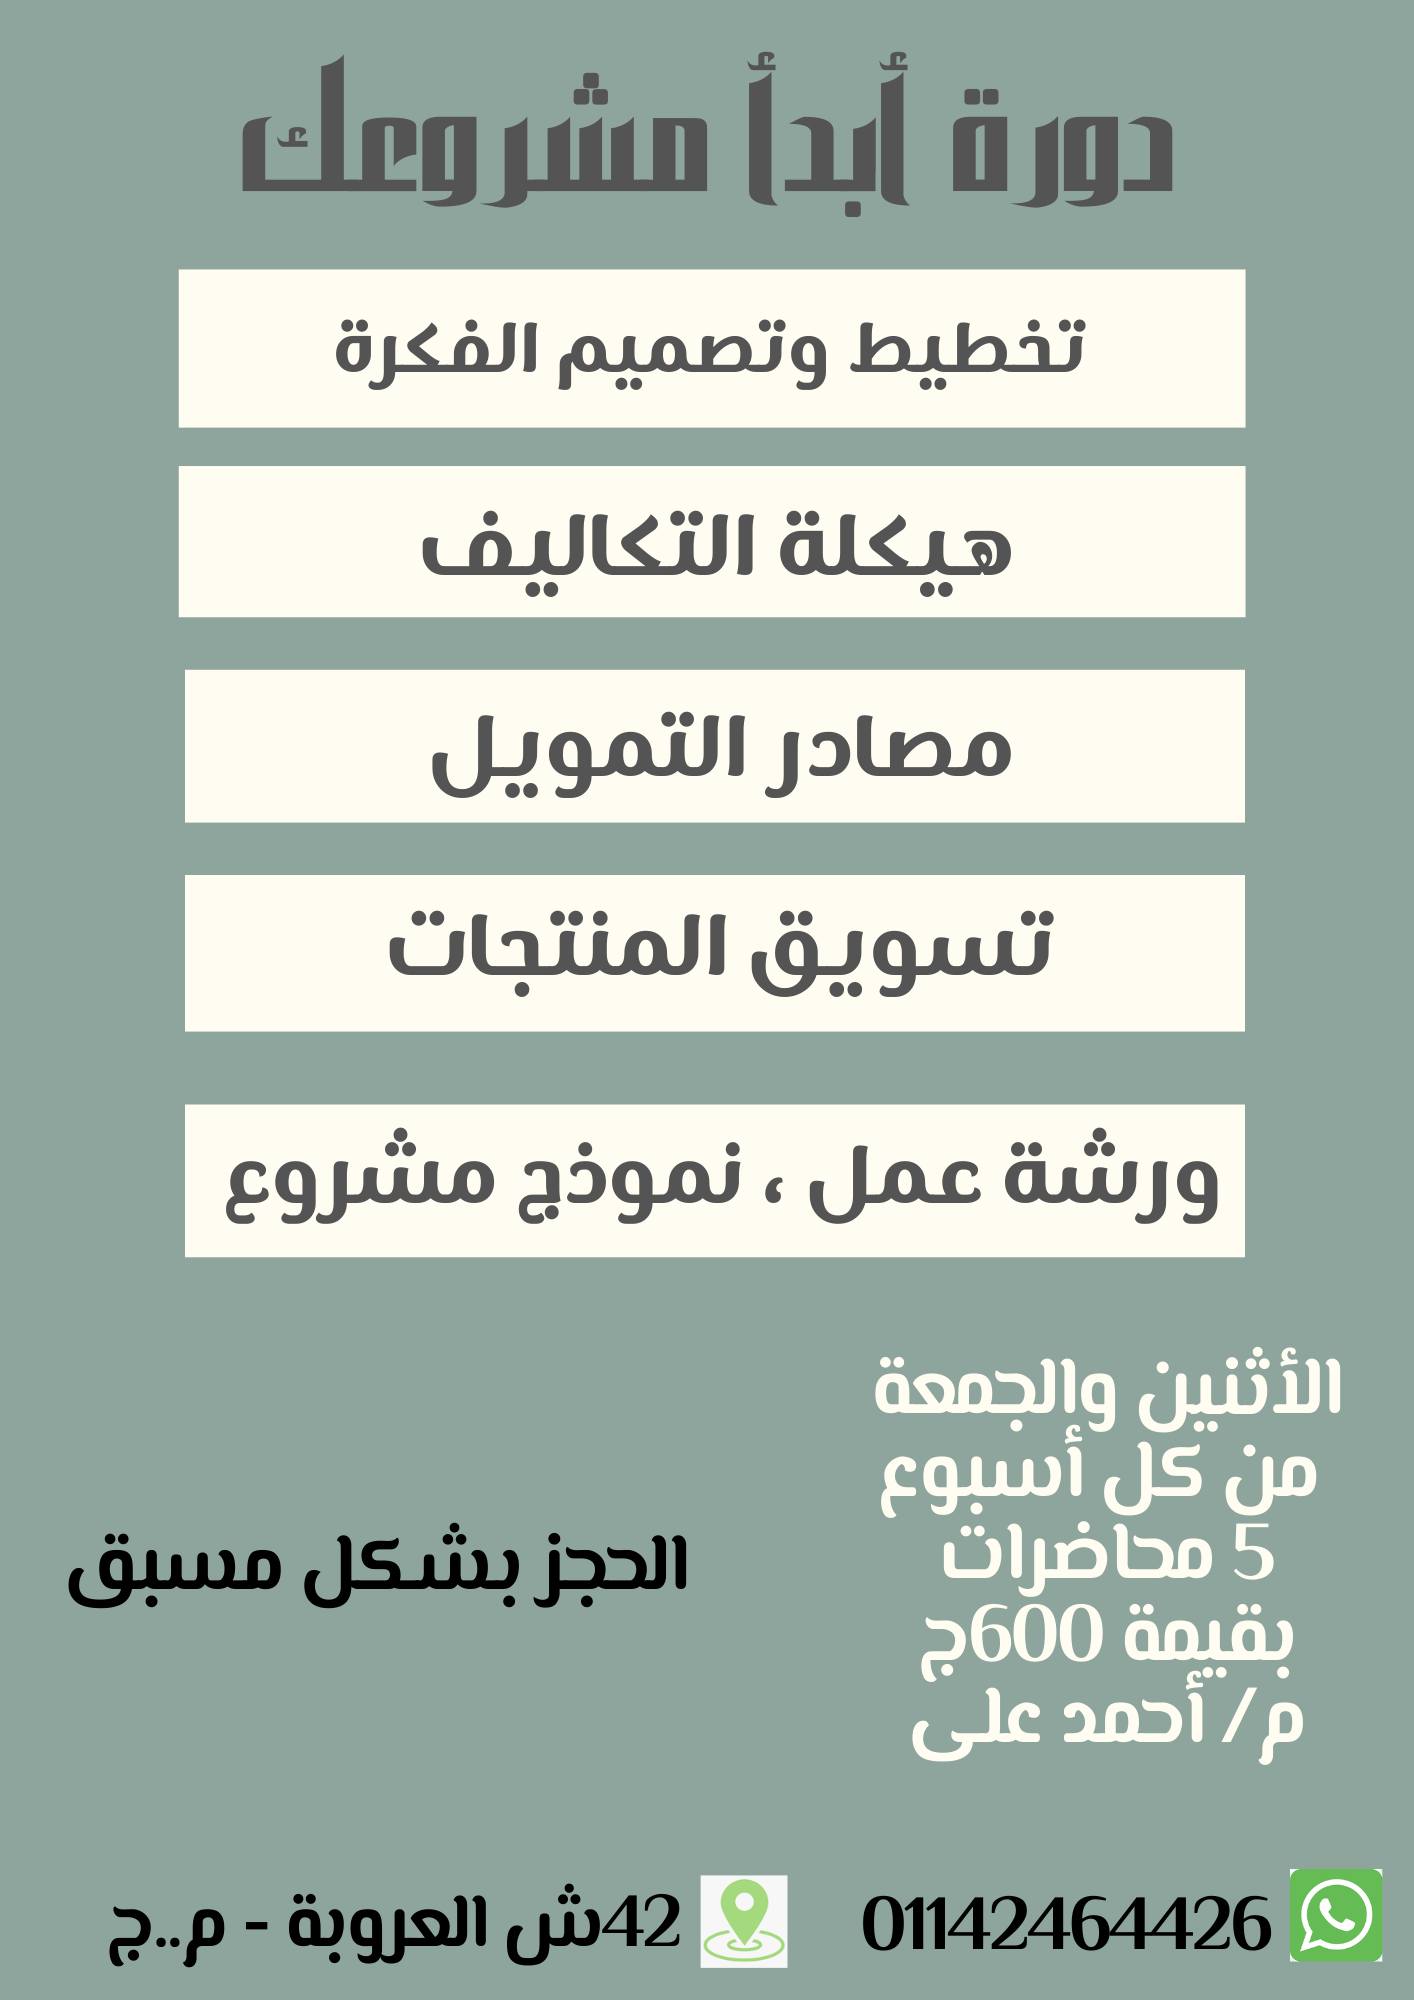 دورة بعنوان “مبادئ تصميم المشروعات الصغيرة ” بمكتبة مصر الجديدة العامة